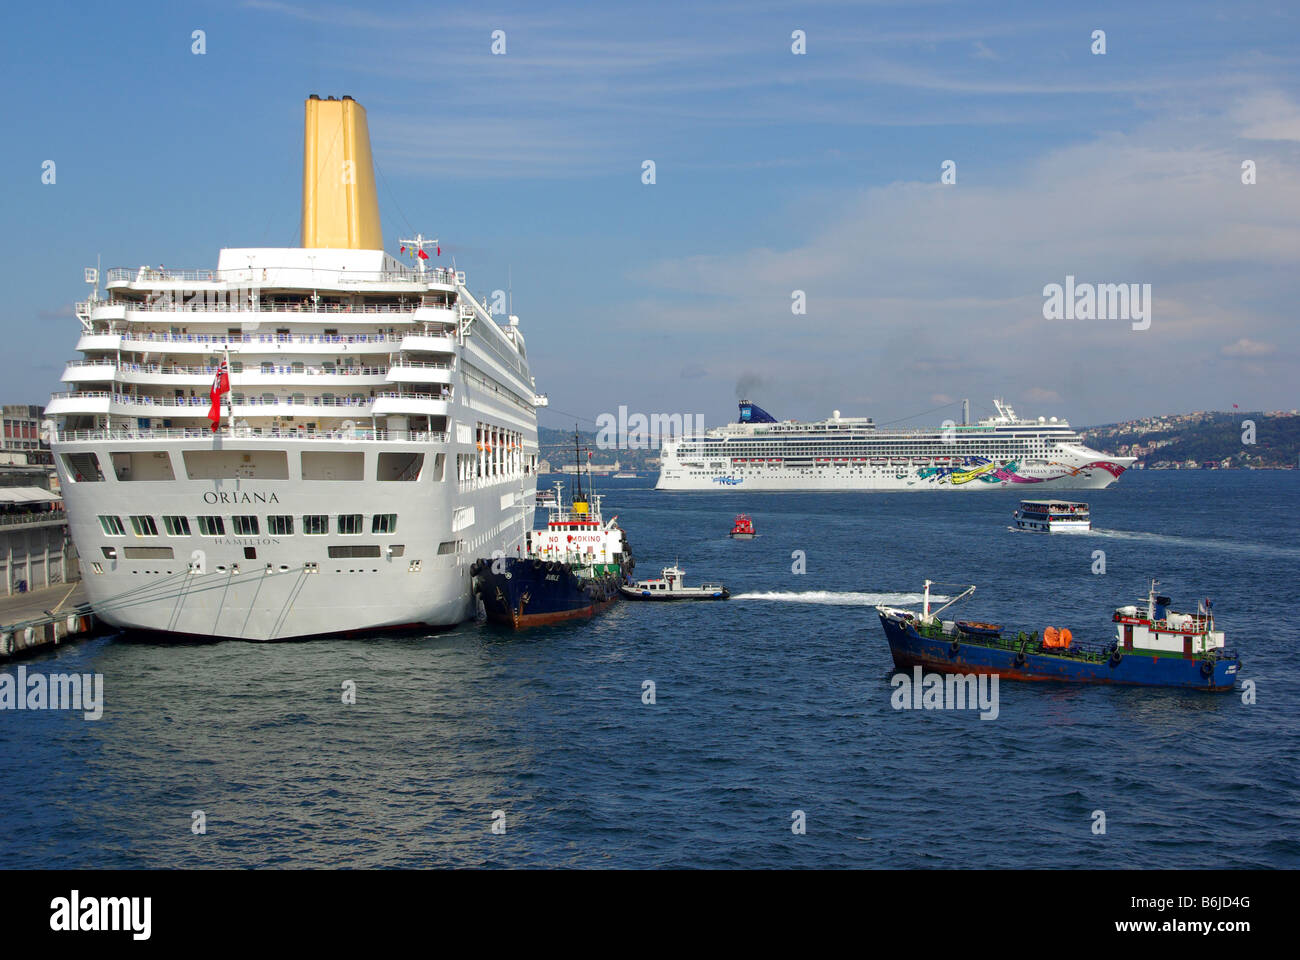 Puerto de Estambul en el Bósforo crucero fluvial P&O Oriana con buques de bunkering asistir & noruego Jewel trasatlántico sale Turquía Europa Foto de stock